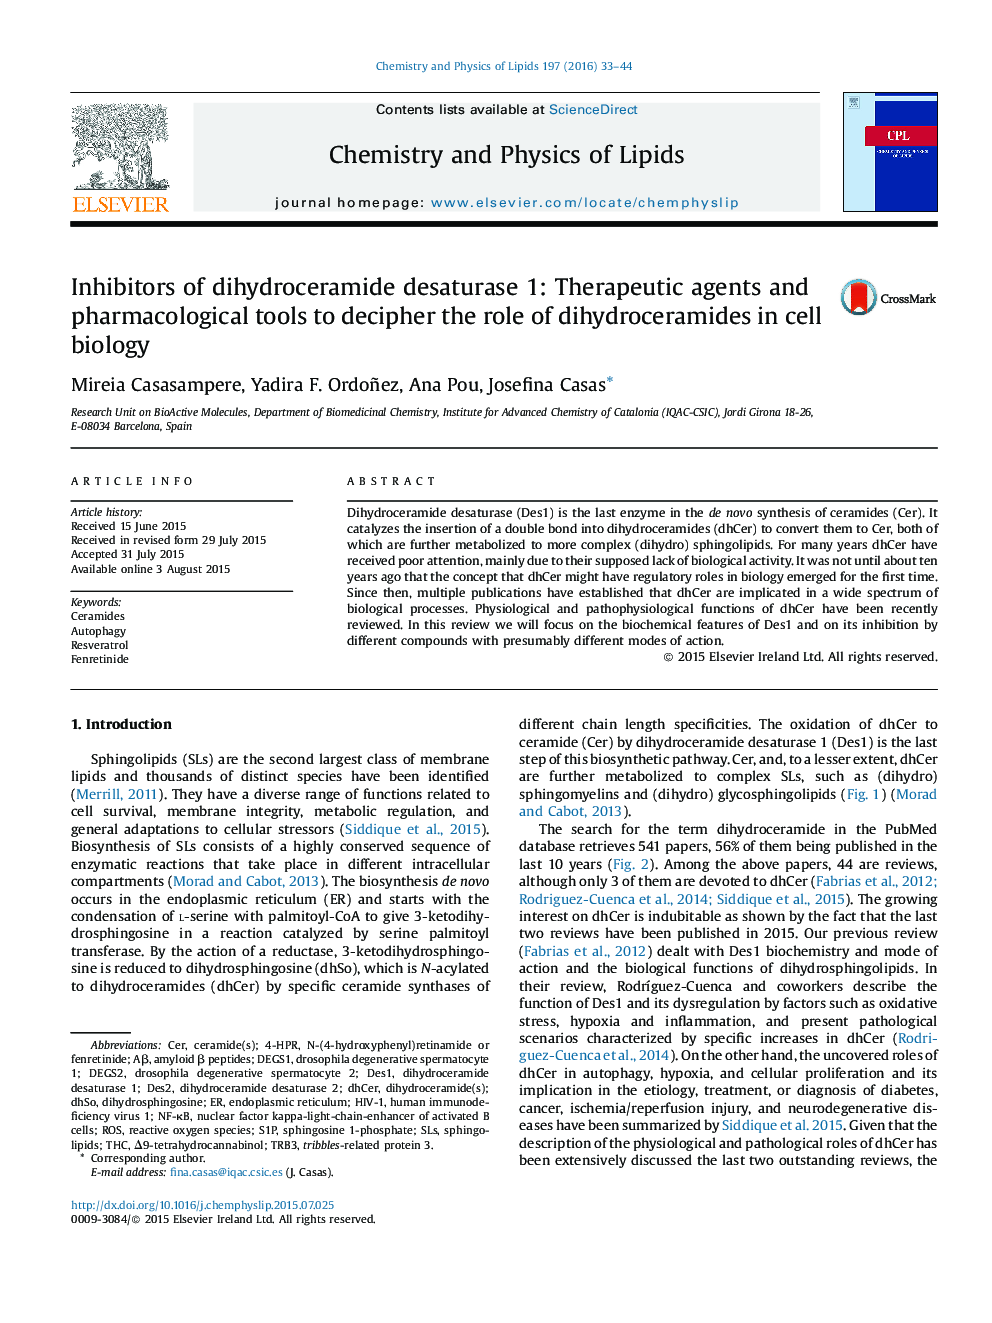 مهار کننده های دی هیدروکرامید دزاتوراز 1: عوامل درمانی و ابزارهای دارویی برای تفسیر نقش دی هیدروکرامید ها در زیست شناسی سلولی 